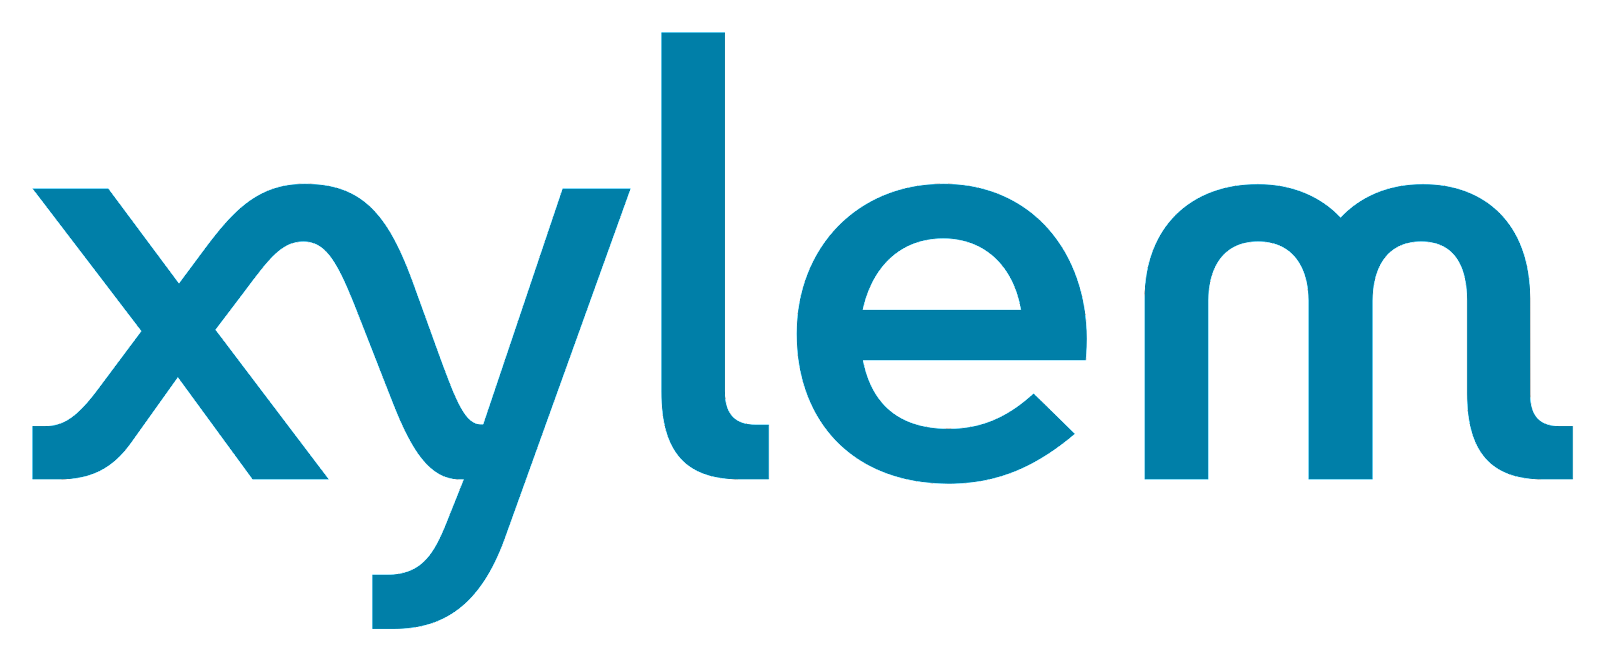 Xylem_Logo